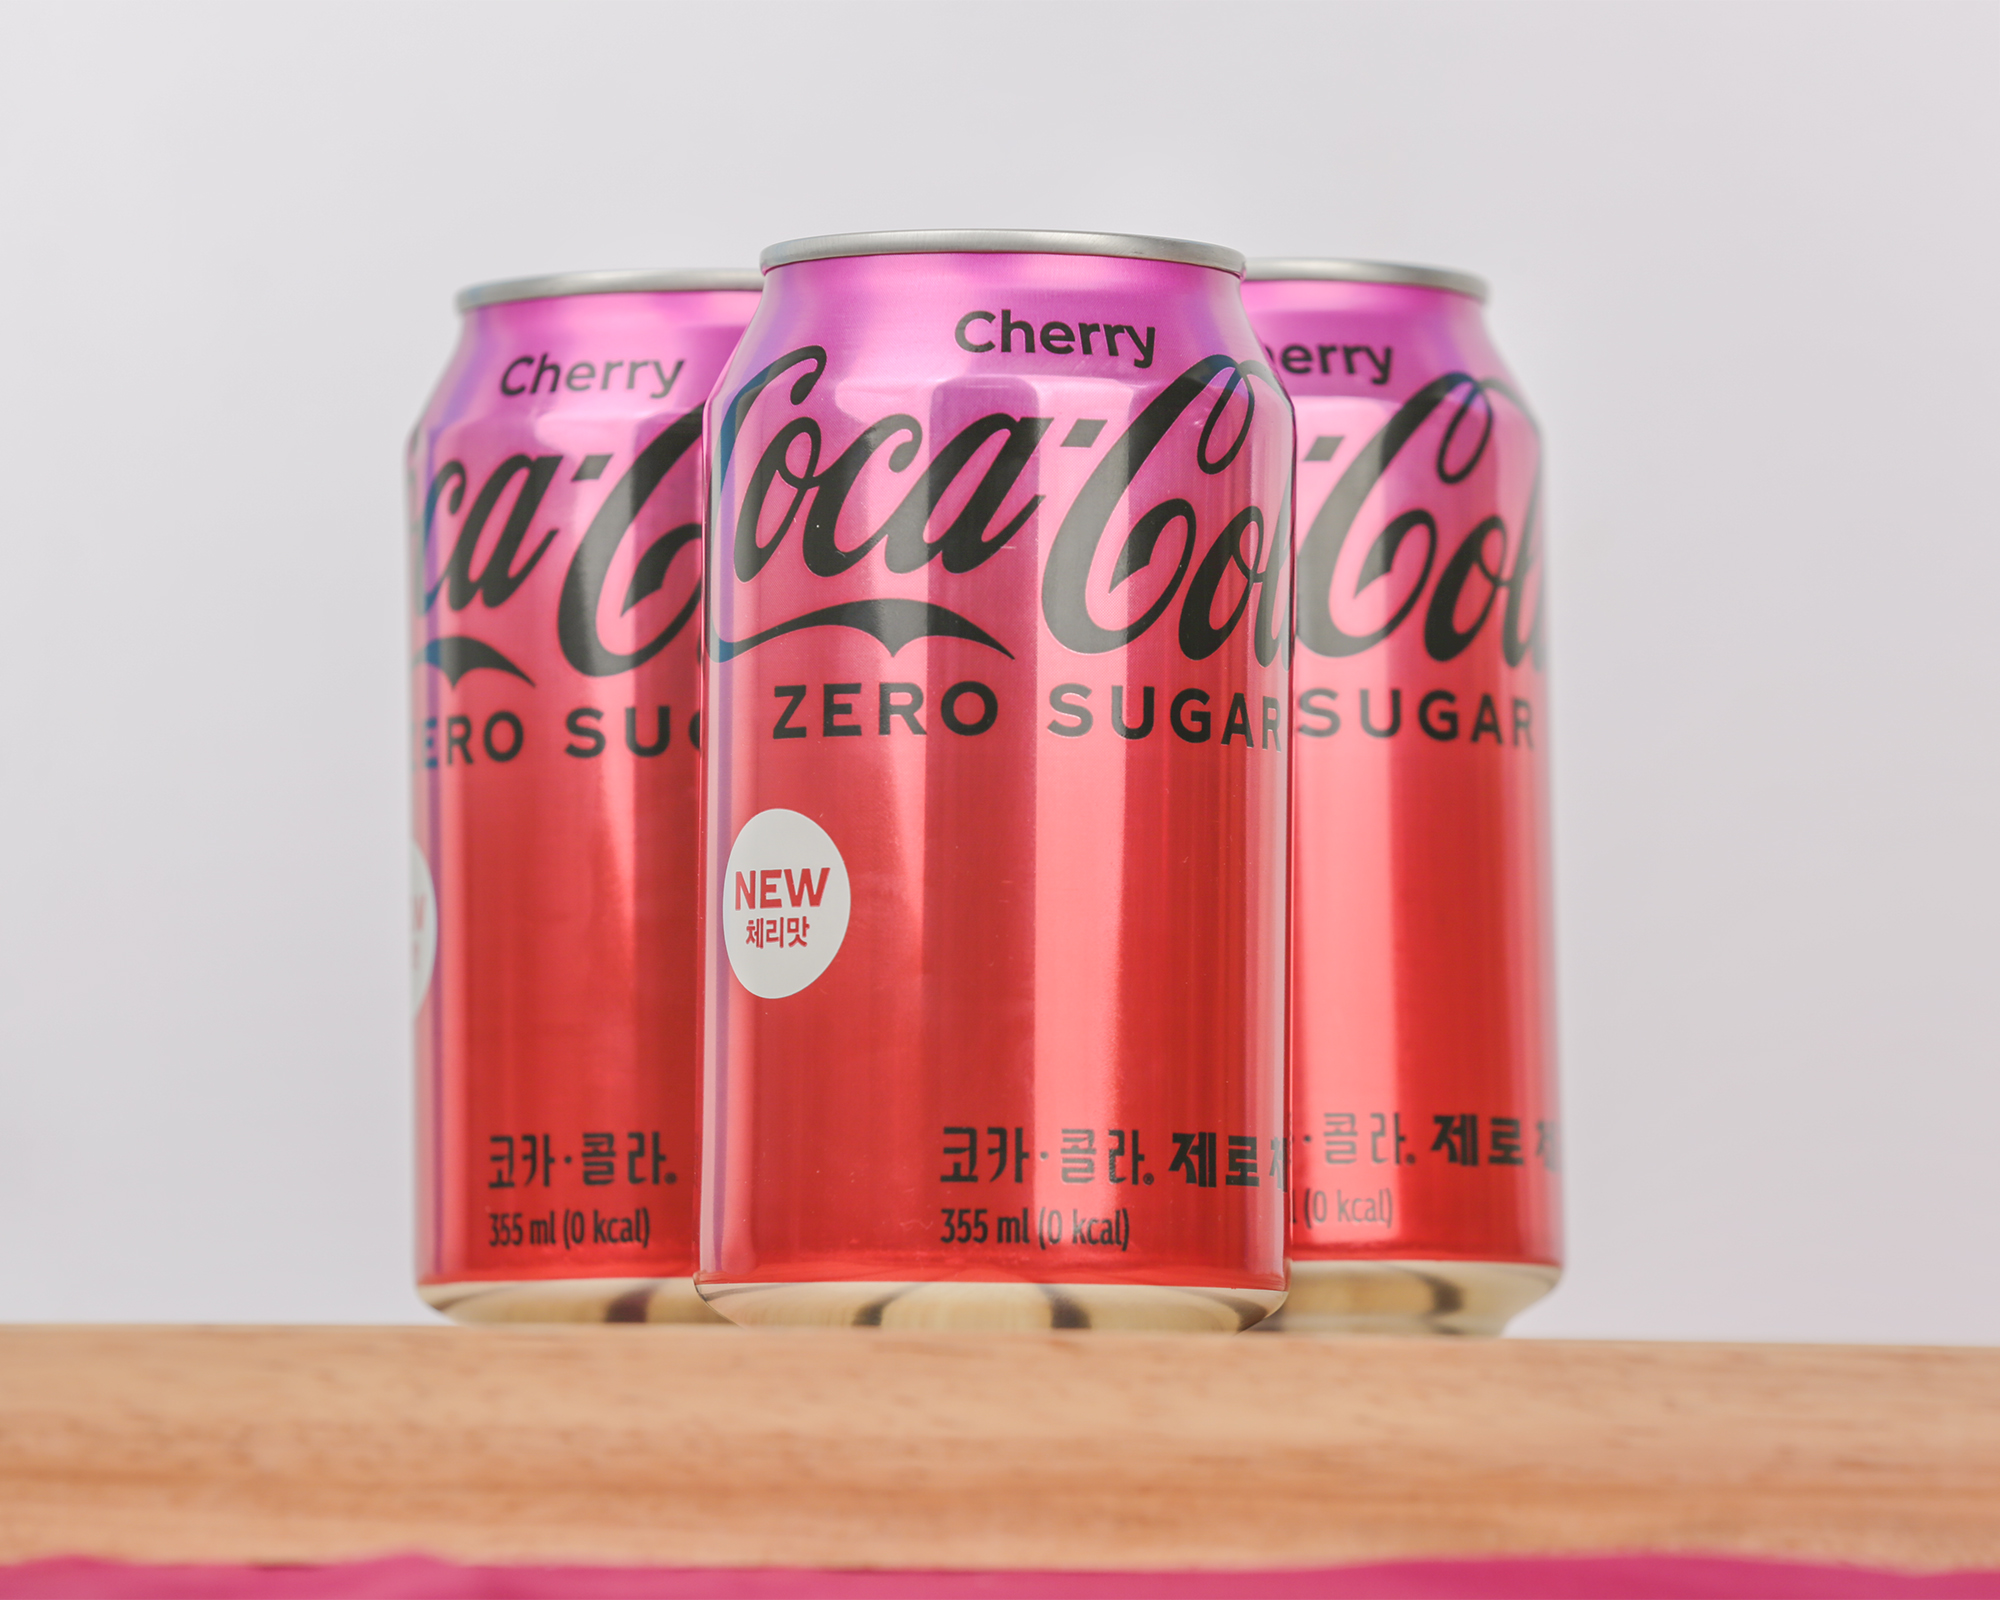 코카-콜라 제로 체리 3캔이 나무 받침대 위에 정렬되어 있다. 제일 앞에 놓여 있는 음료 캔 제품의 좌우 뒷편에 캔이 하나씩 더 놓여져 있다.